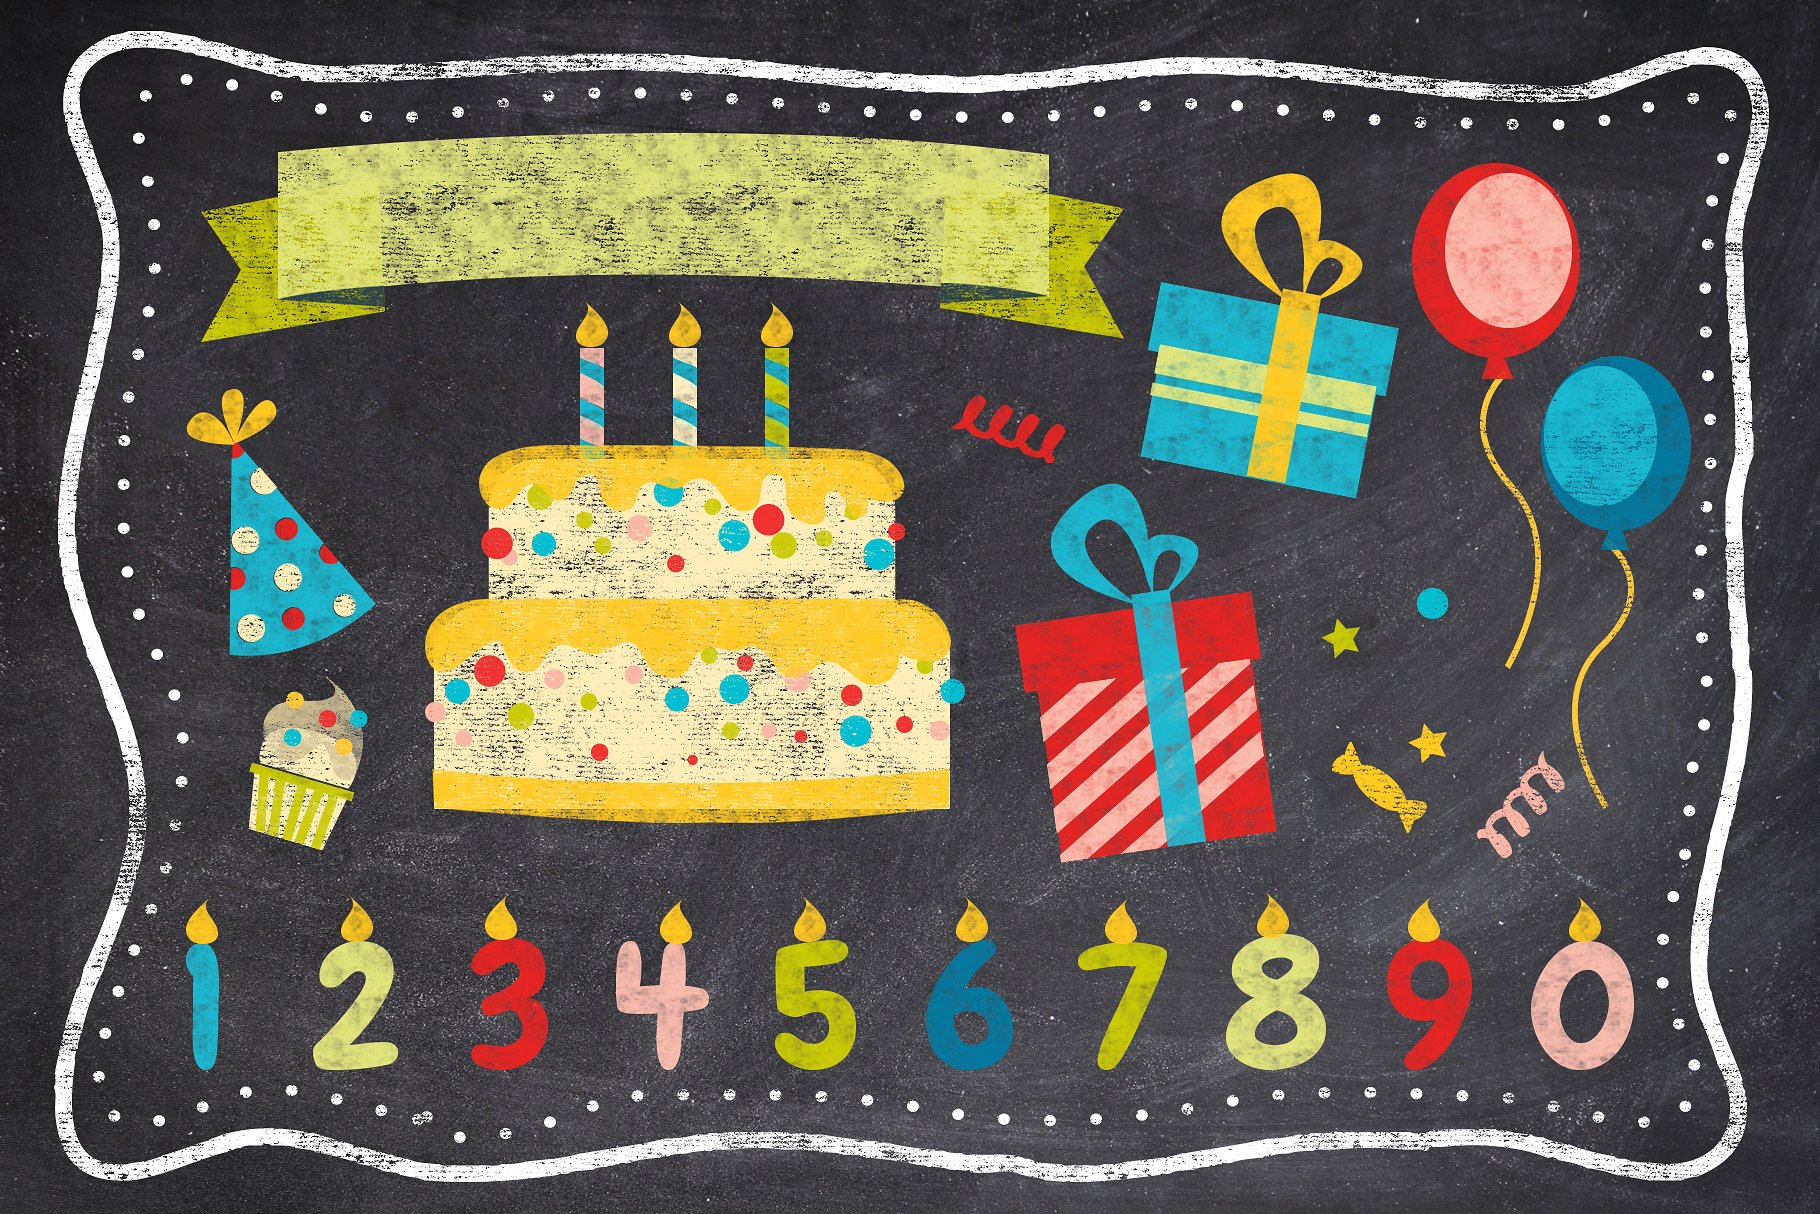 粉笔效果的生日派对海报模板 Chalk Birthday Party Flyer Bundle [psd]插图(2)